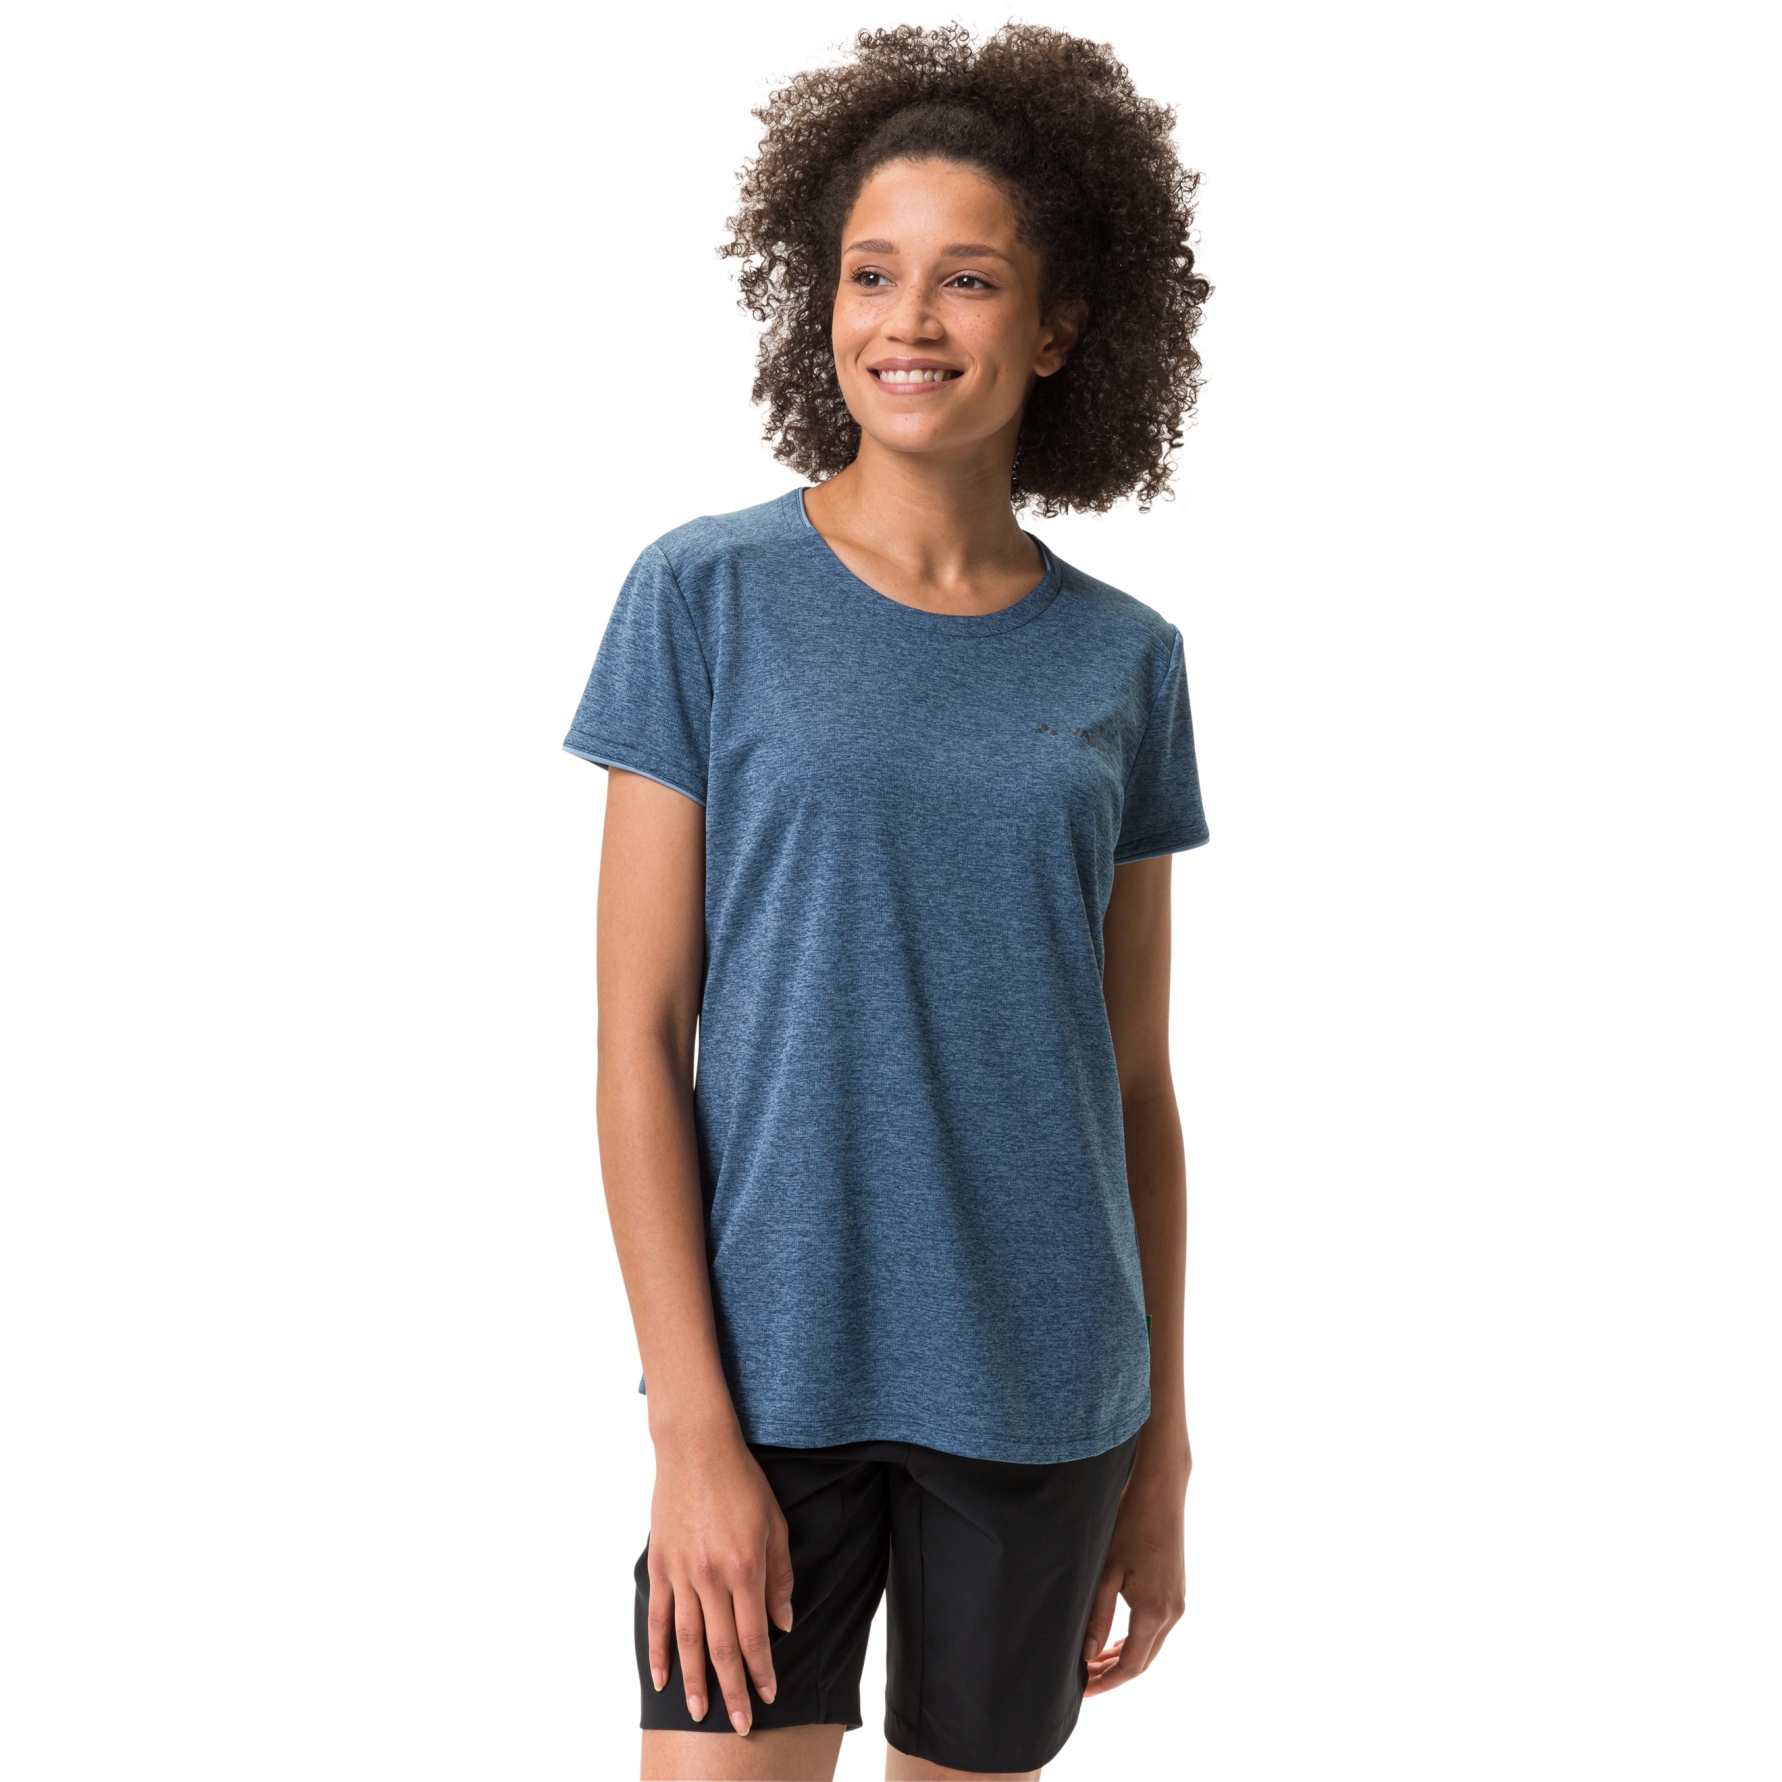 Produktbild von Vaude Essential T-Shirt Damen - dark sea uni